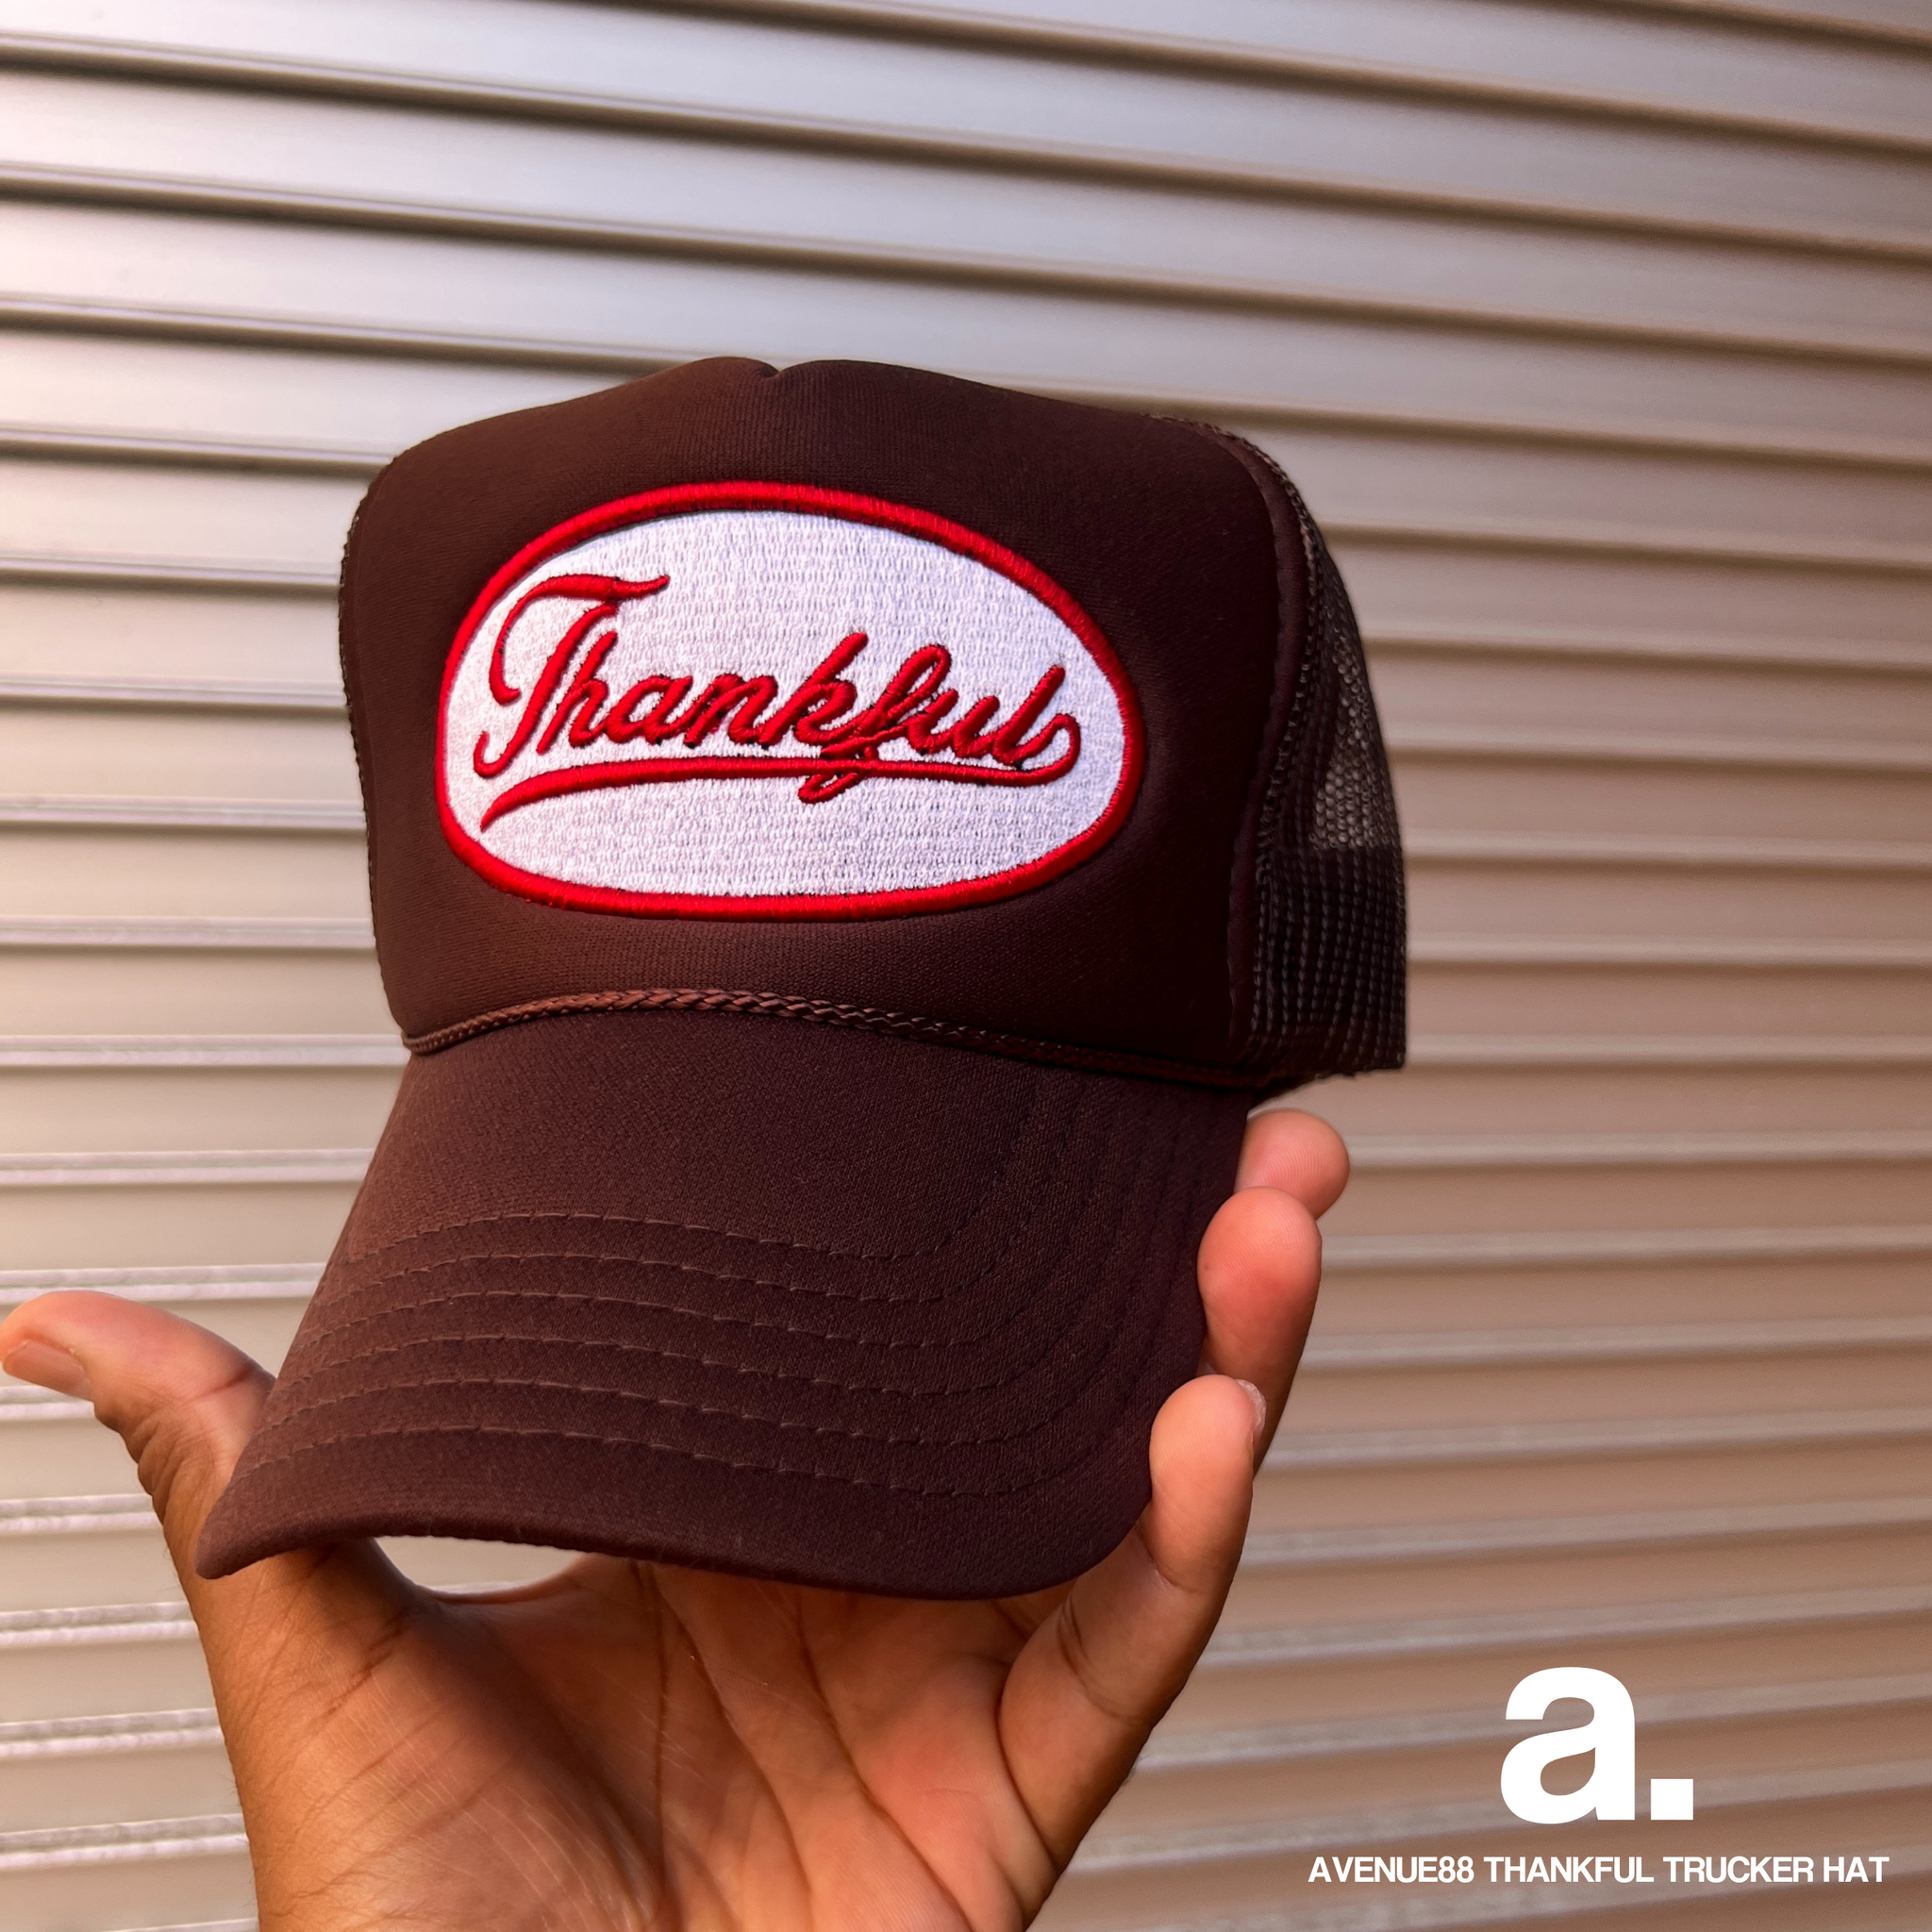 Thankful brown white red trucker hat